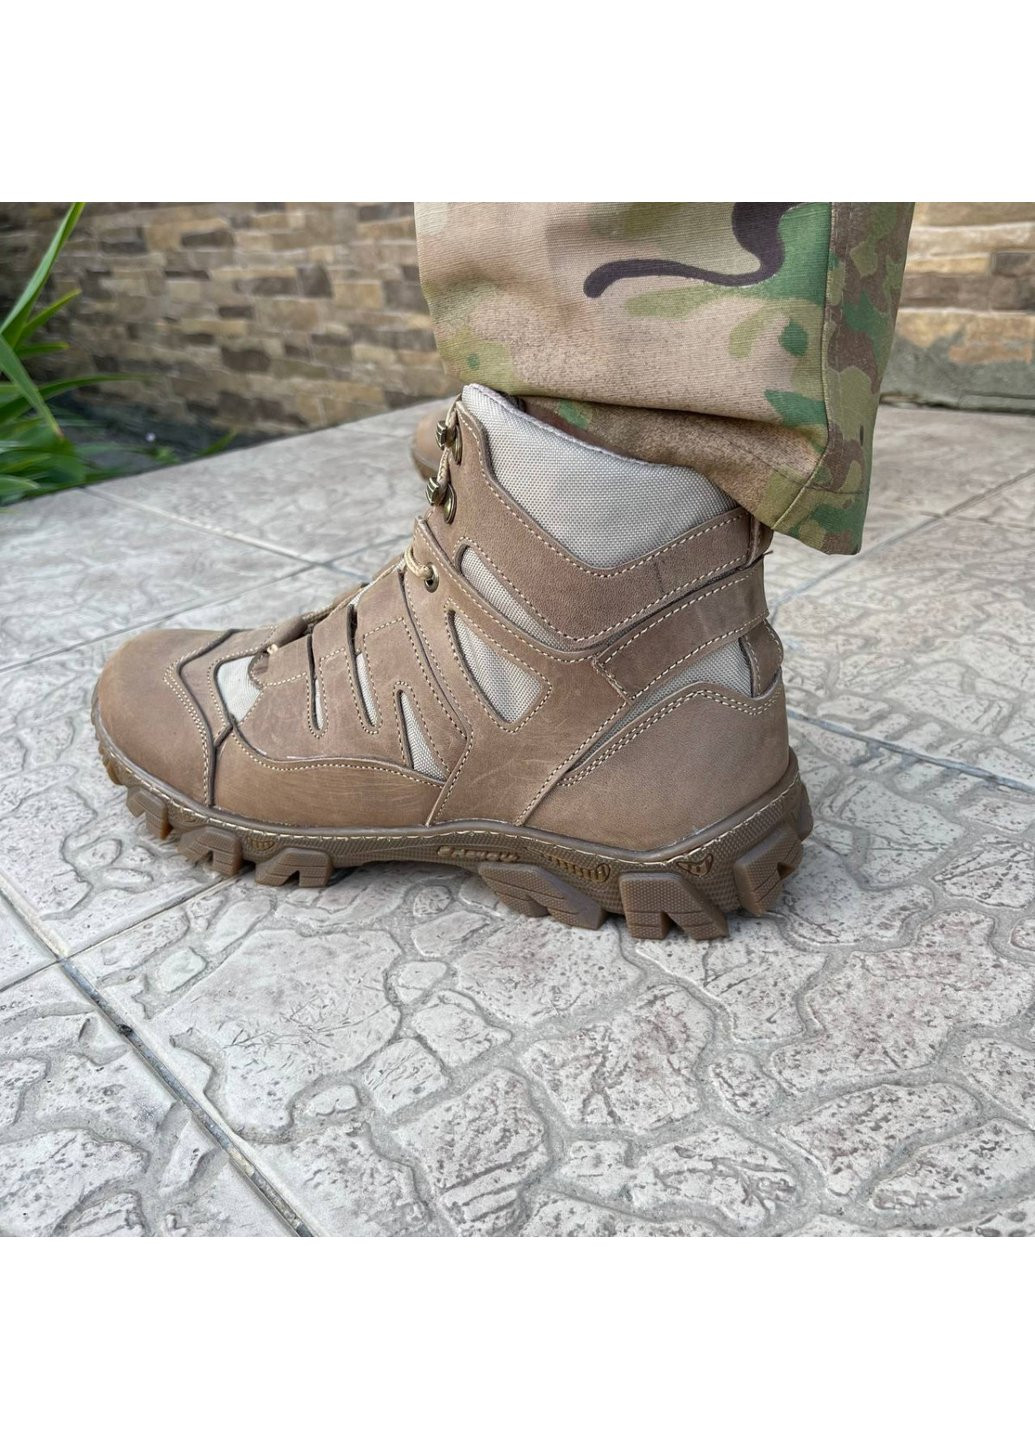 Коричневые осенние ботинки военные тактические всу (зсу) 7527 42 р 27,5 см коричневые Power